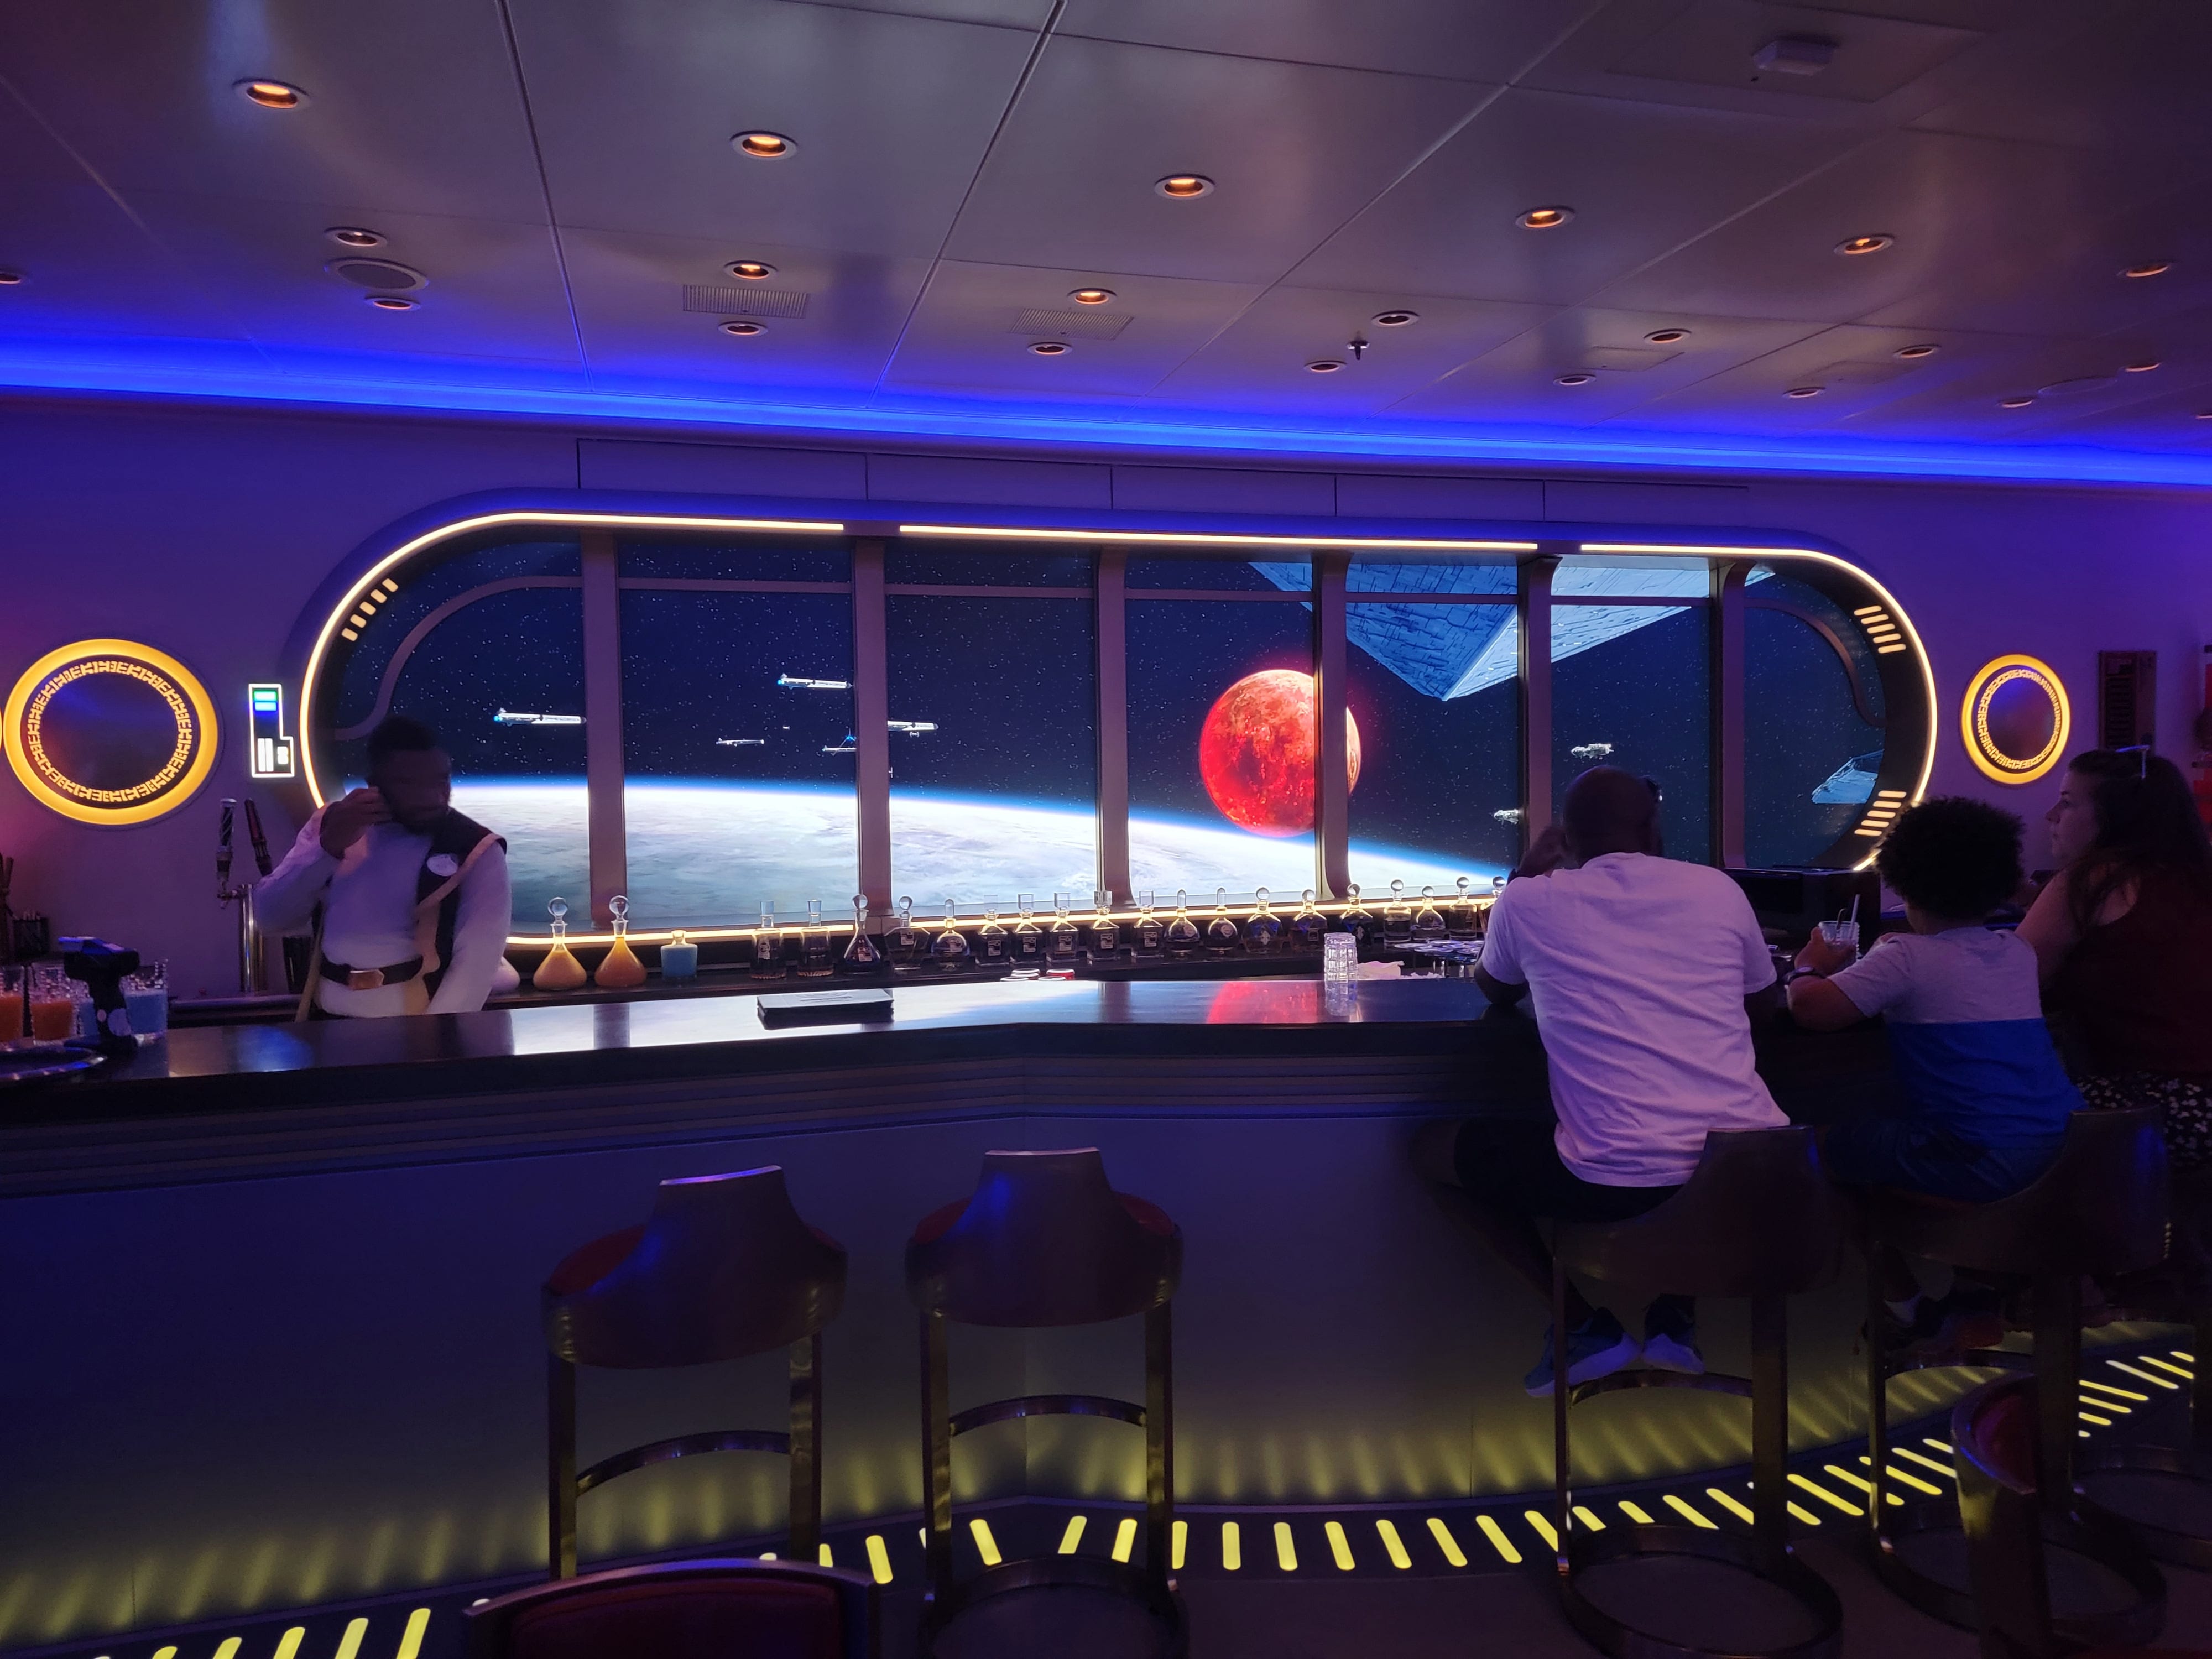 Star Wars Hyperspace Lounge auf dem Disney Wish Ship